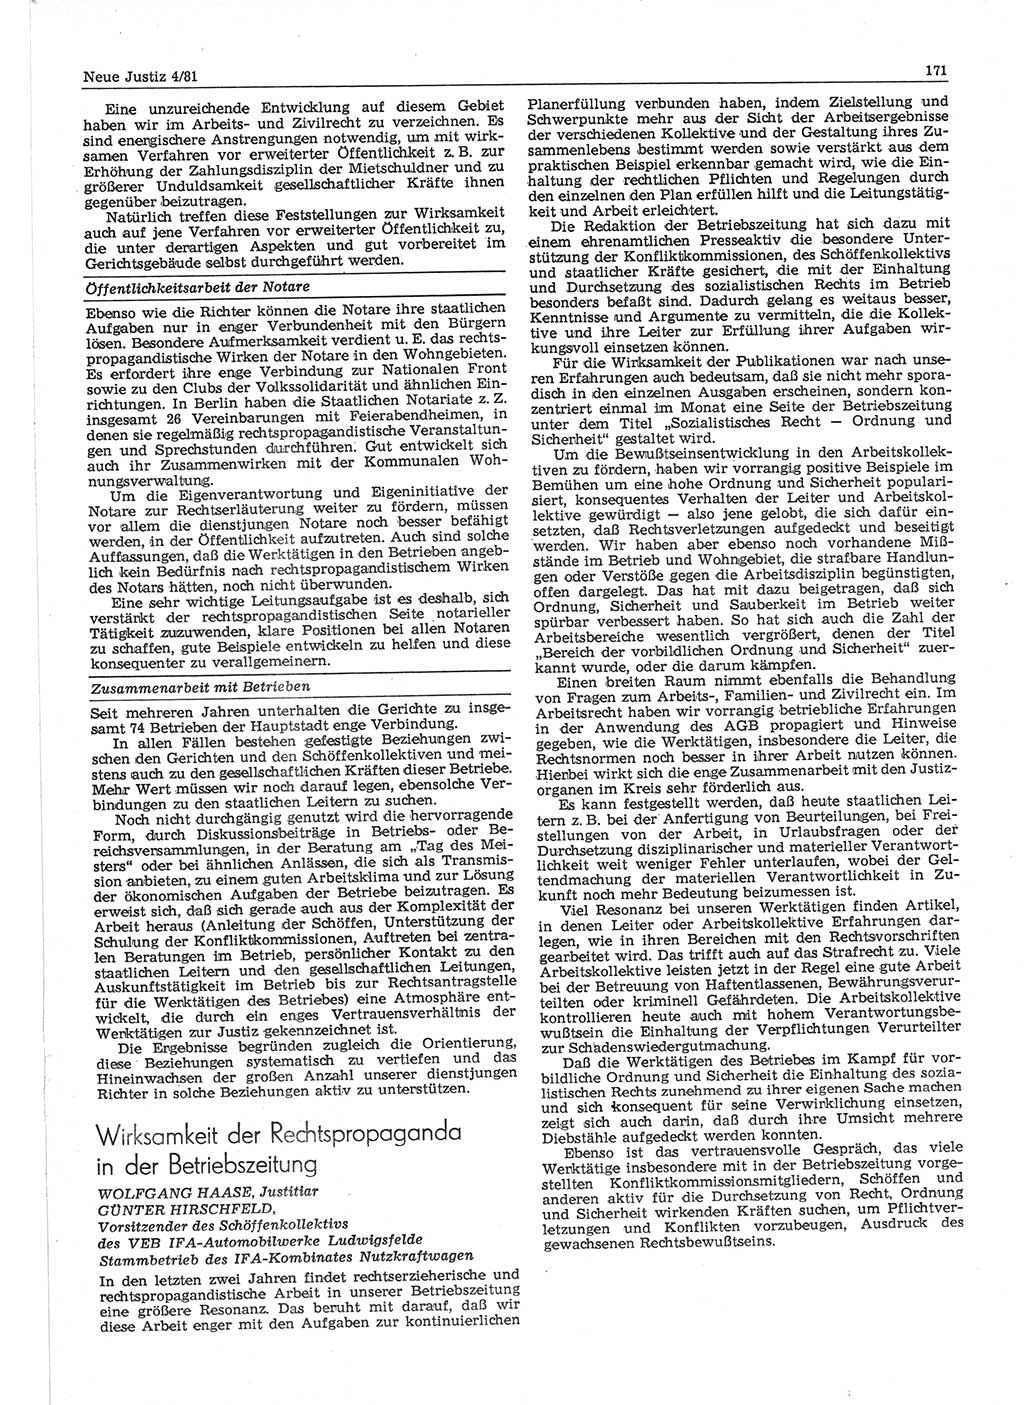 Neue Justiz (NJ), Zeitschrift für sozialistisches Recht und Gesetzlichkeit [Deutsche Demokratische Republik (DDR)], 35. Jahrgang 1981, Seite 171 (NJ DDR 1981, S. 171)